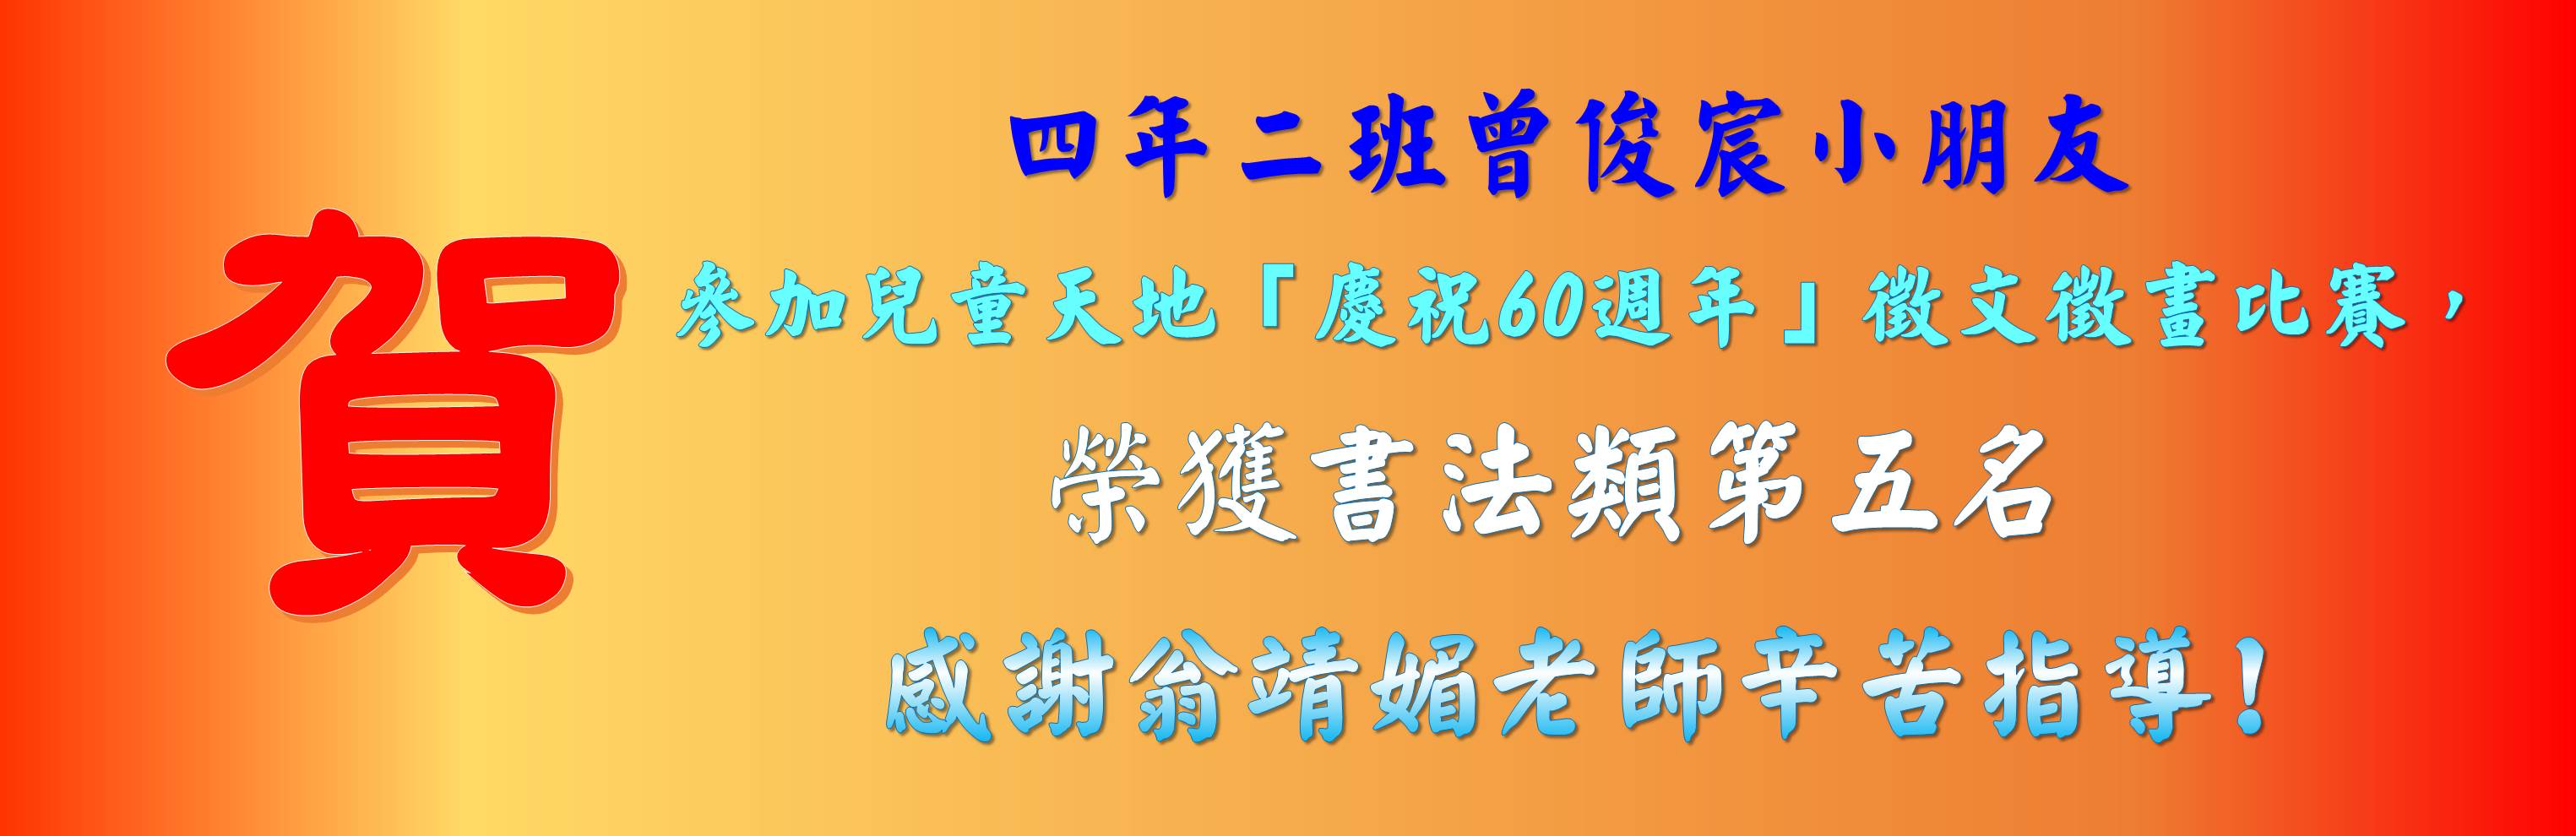 曾俊宸小朋友參加兒童天地慶祝60週年徵文徵畫活動榮獲書法類第五名